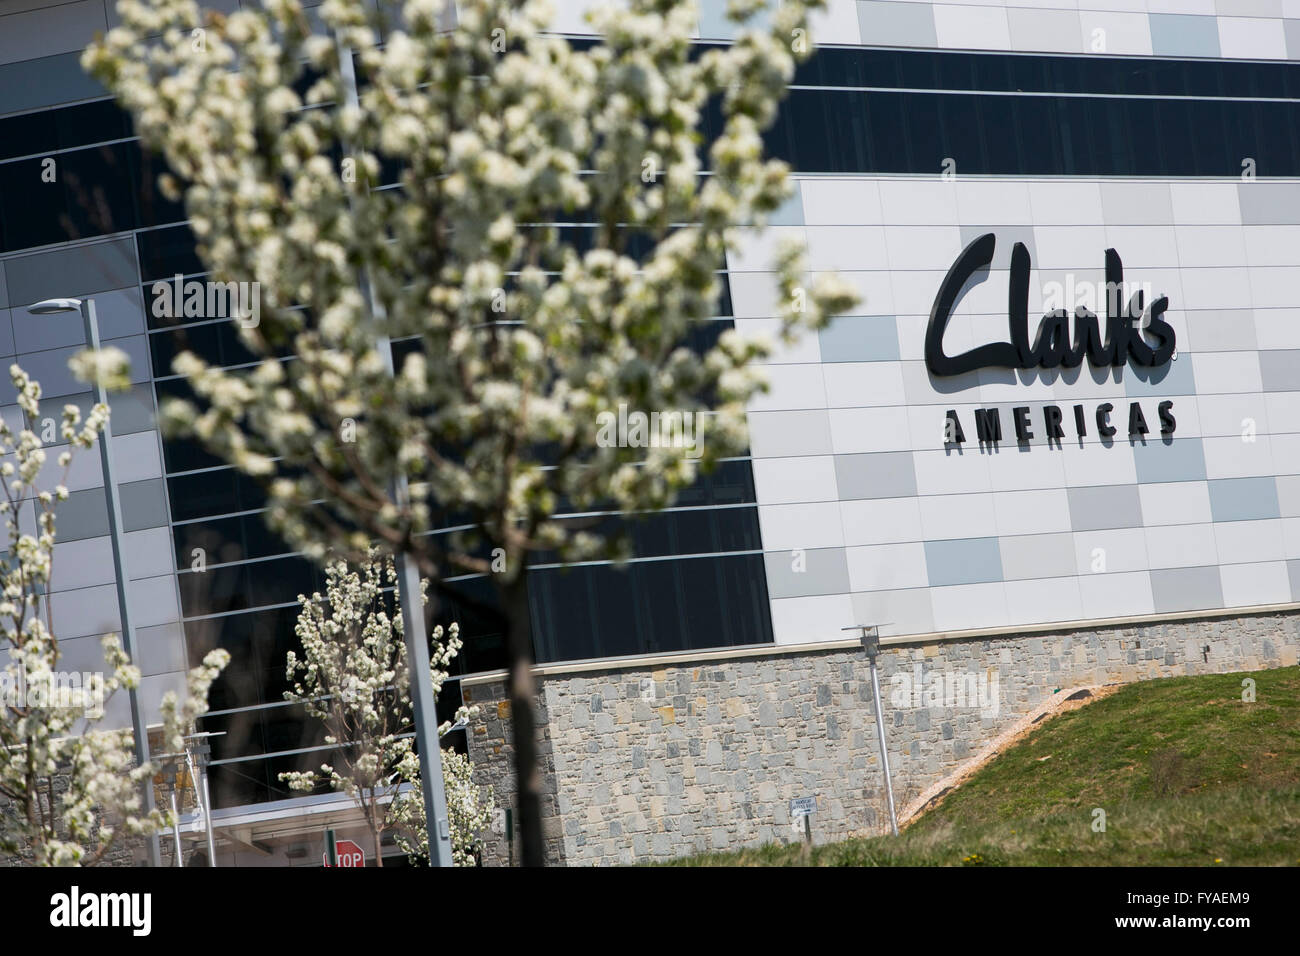 Un logo affiche à l'extérieur d'un établissement occupé par le fabricant de chaussures Clarks Amériques à Hanover, en Pennsylvanie le 17 avril 2016. Banque D'Images